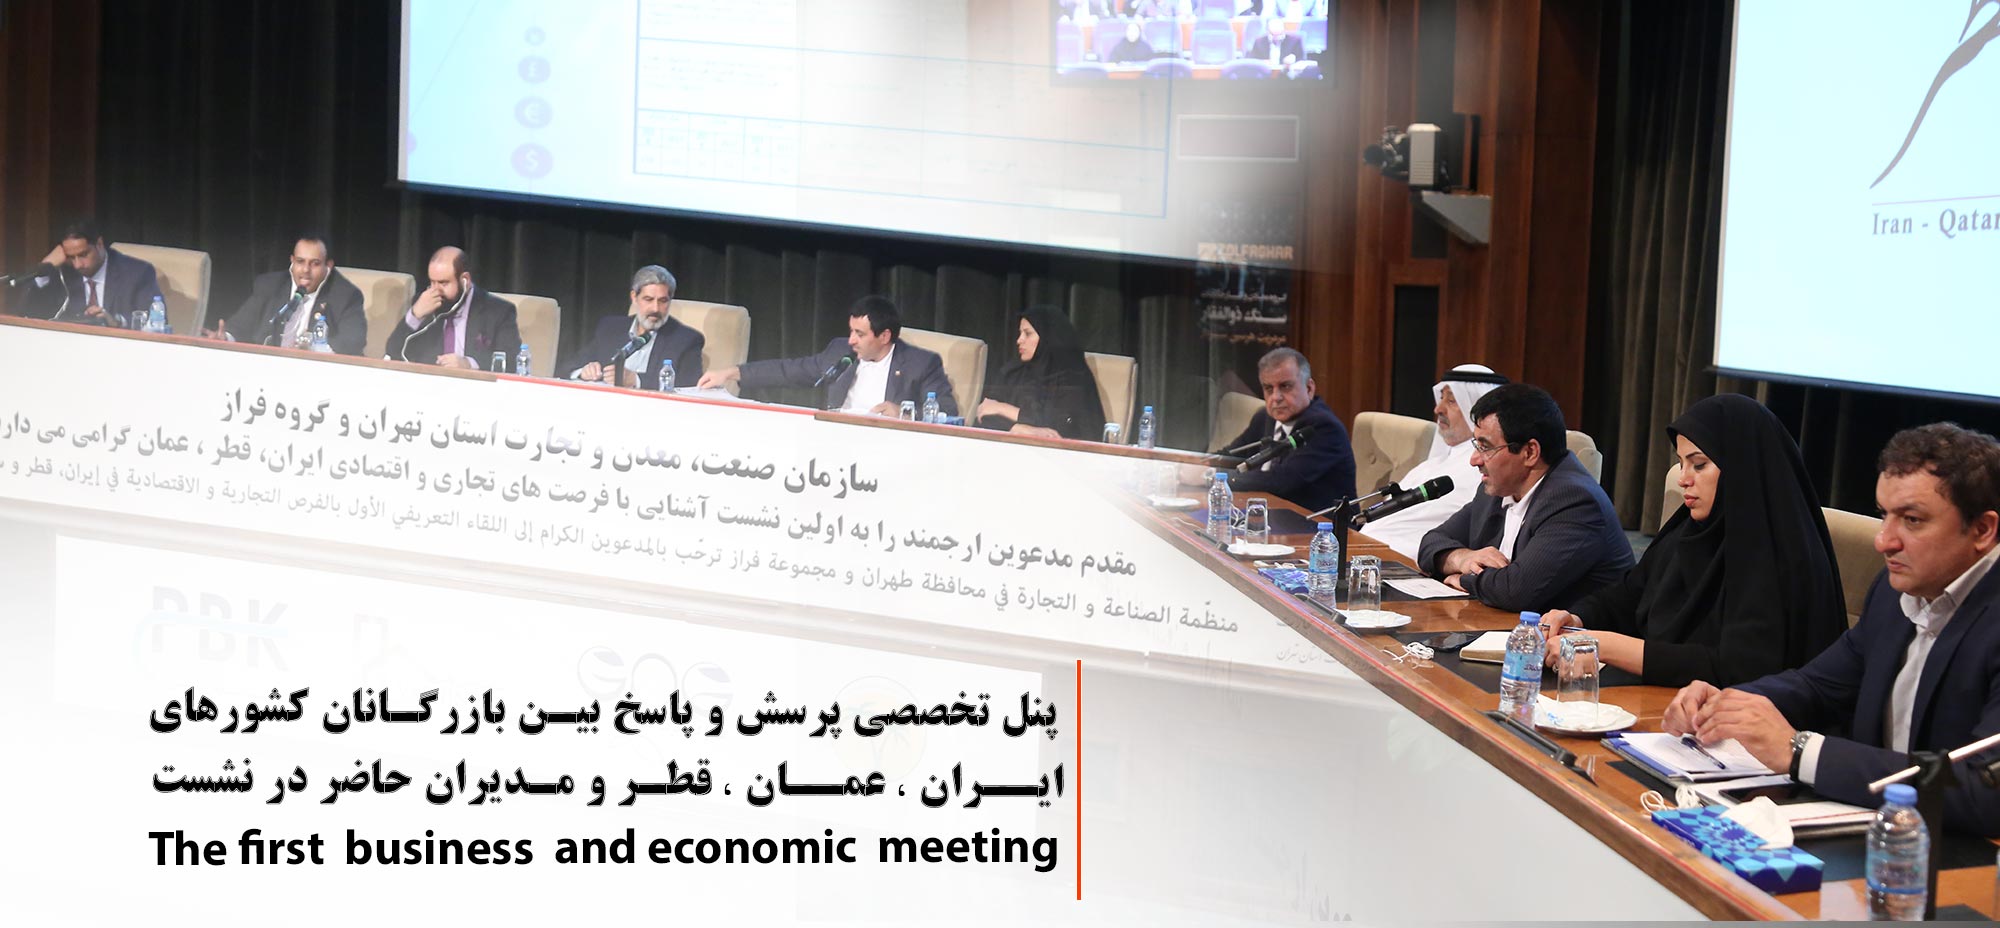 پنل تخصصی پرسش و پاسخ بین بازرگانان کشورهای ایران ، عمان ، قطر و مدیران حاضر در نشست